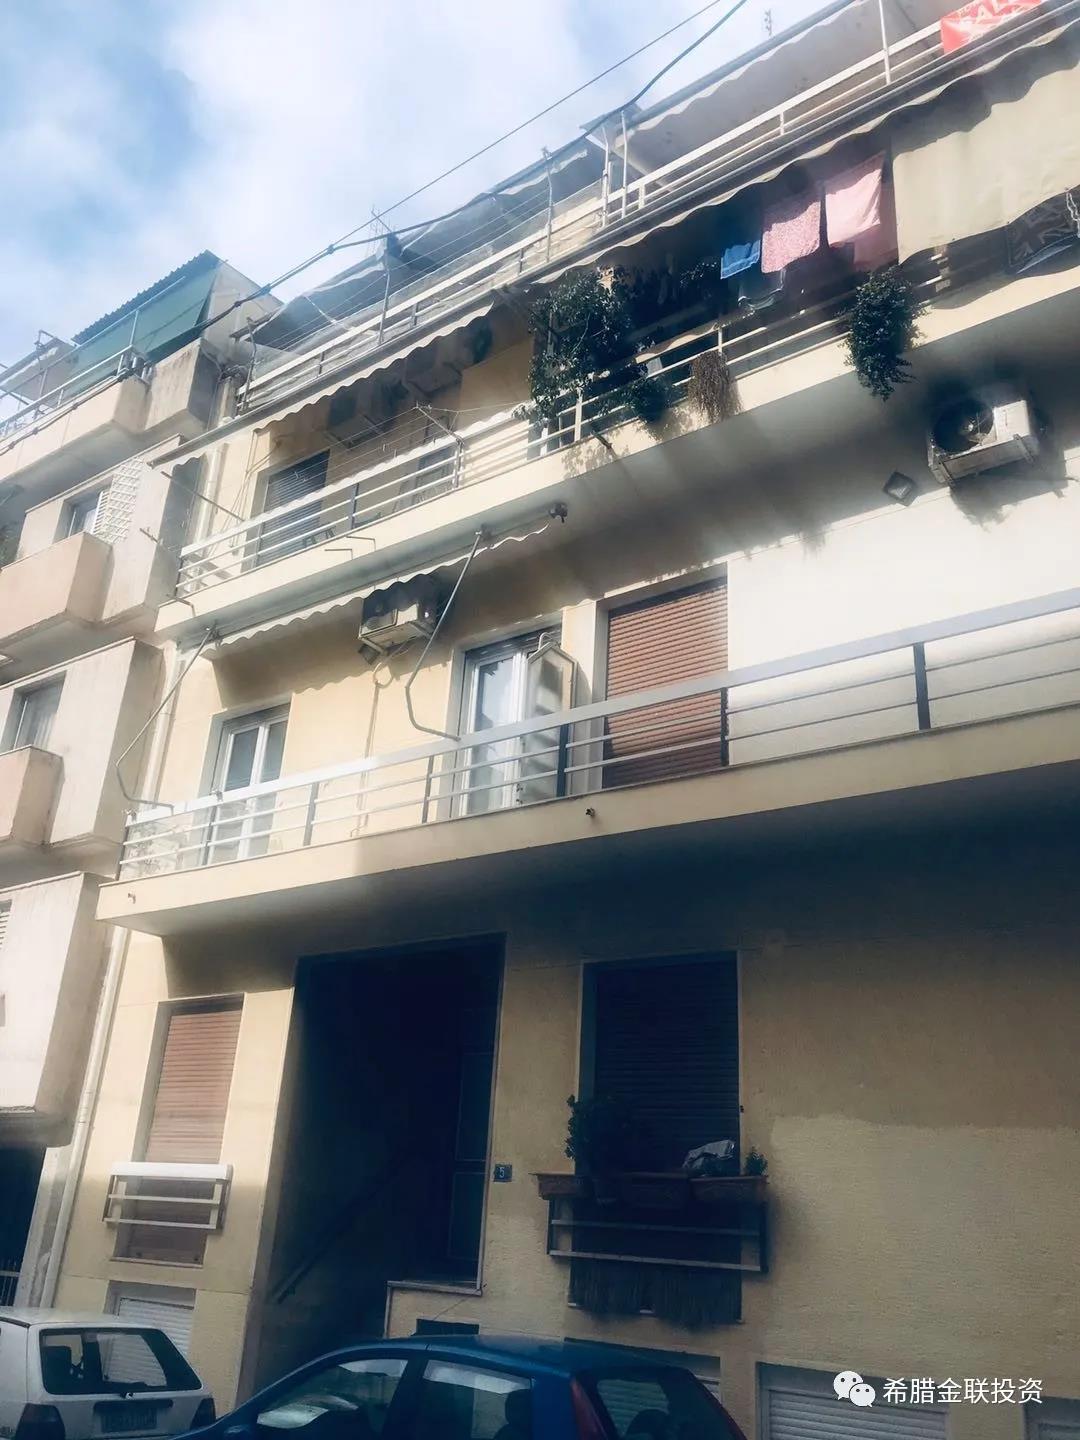 【A2023】Ampelokipoi,Athens公寓出售,售价67.000 €+68.000€